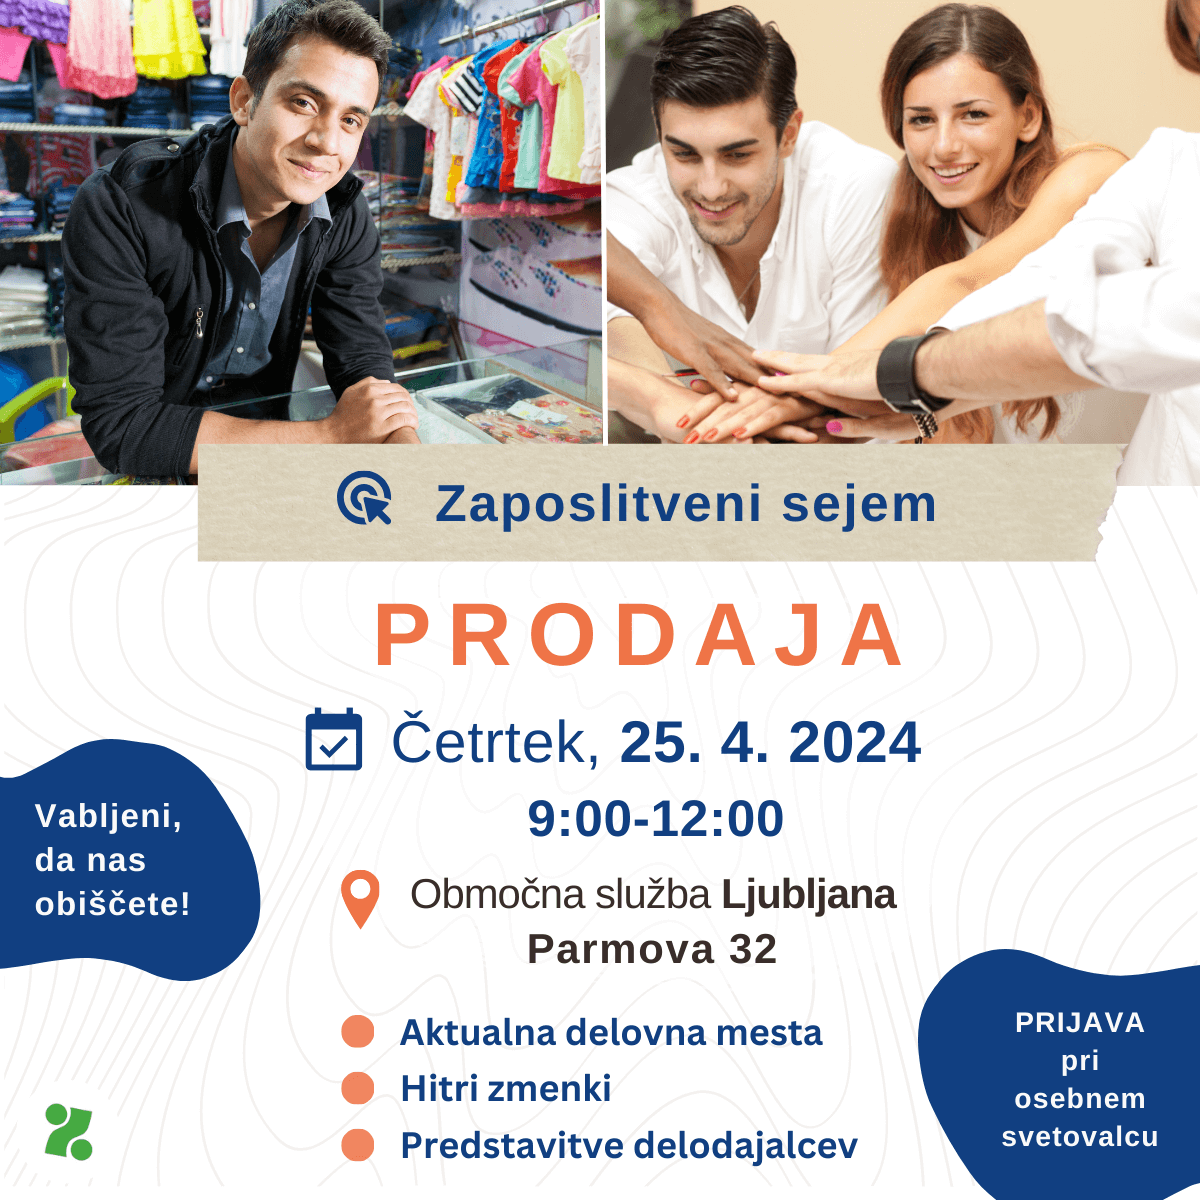 Zaposlitveni dogodek, področje prodaje, ZRSZ, Območna služba Ljubljana, 25. 4. 2024, od 9. do 12. ure